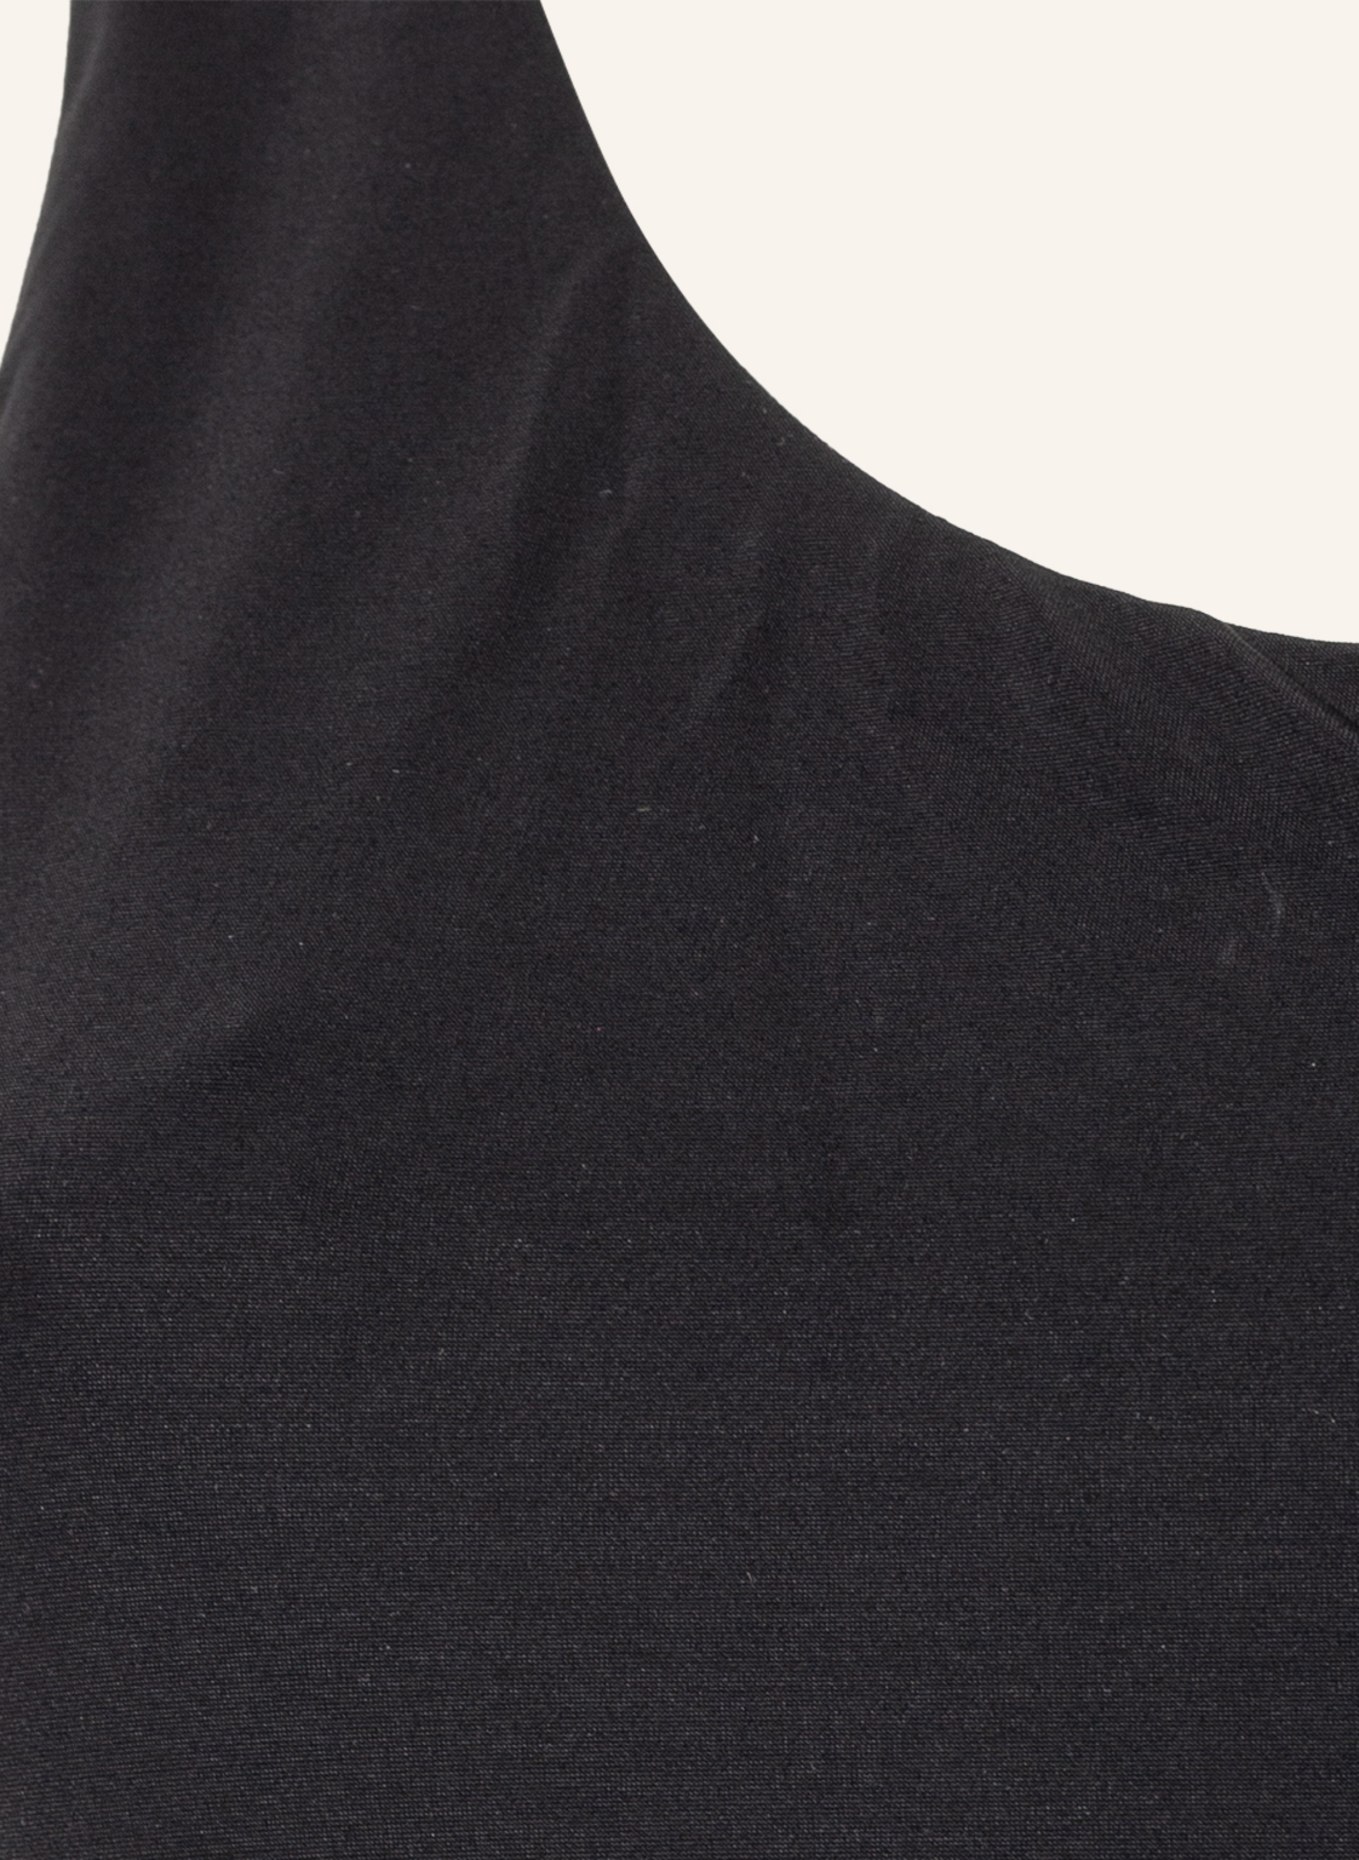 JETS Australia One-shoulder swimsuit JETSET , Color: BLACK (Image 4)